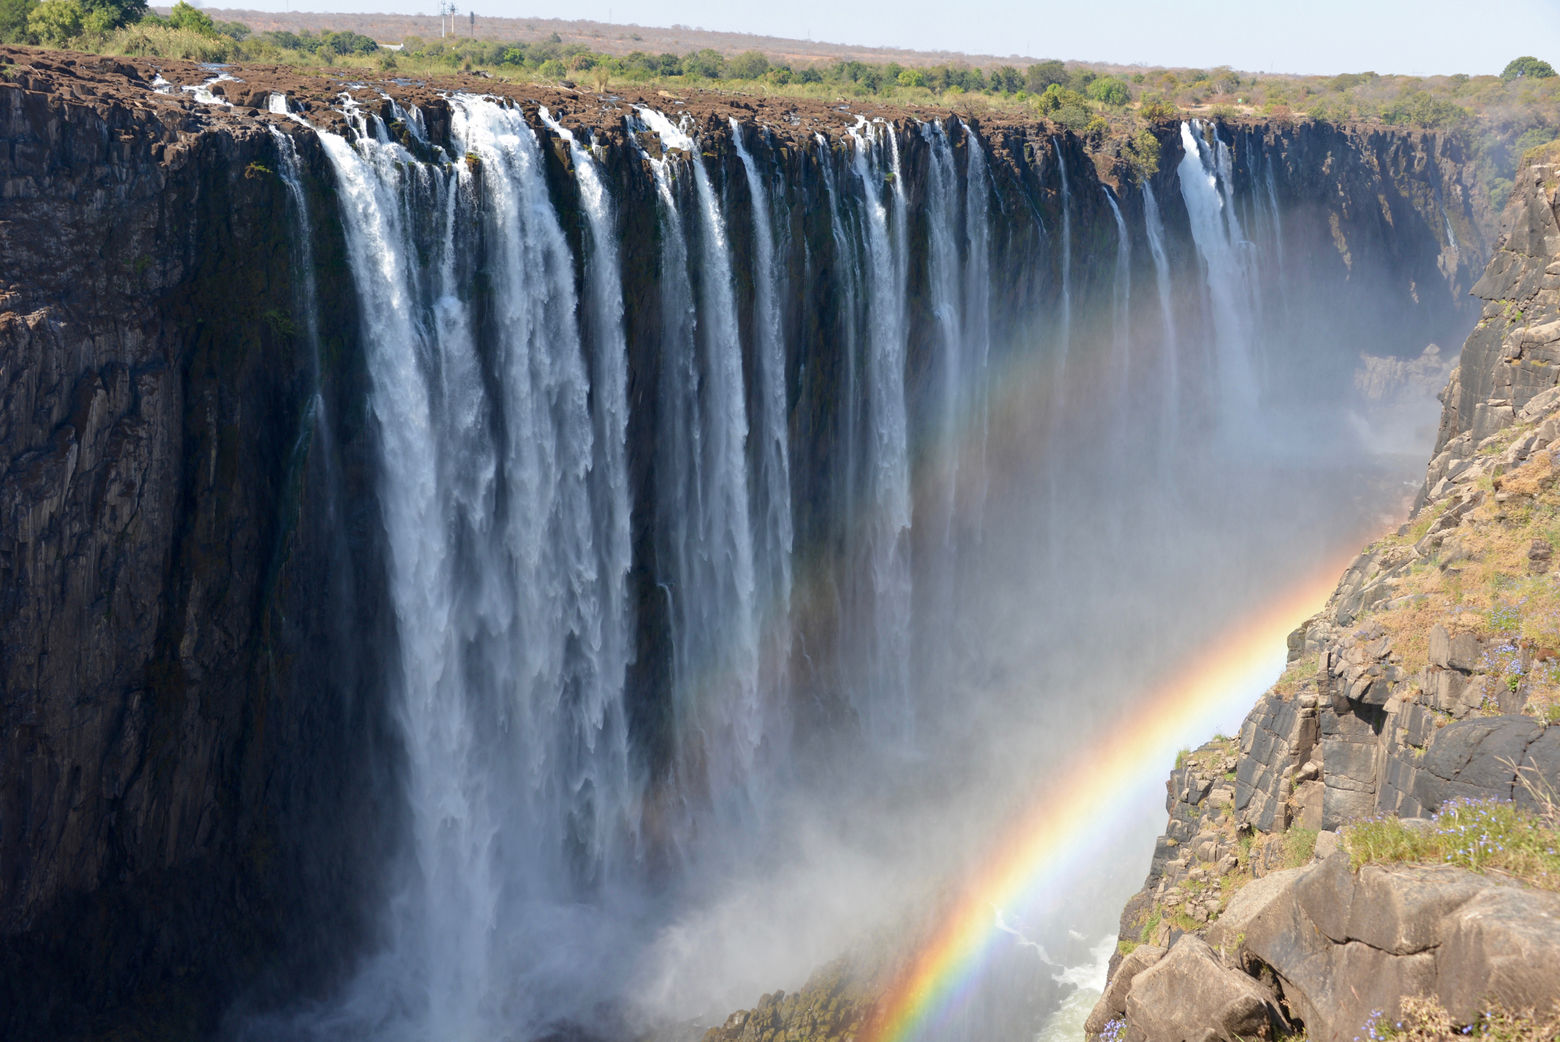 Victoria Falls, Zambia-Zimbabwe border